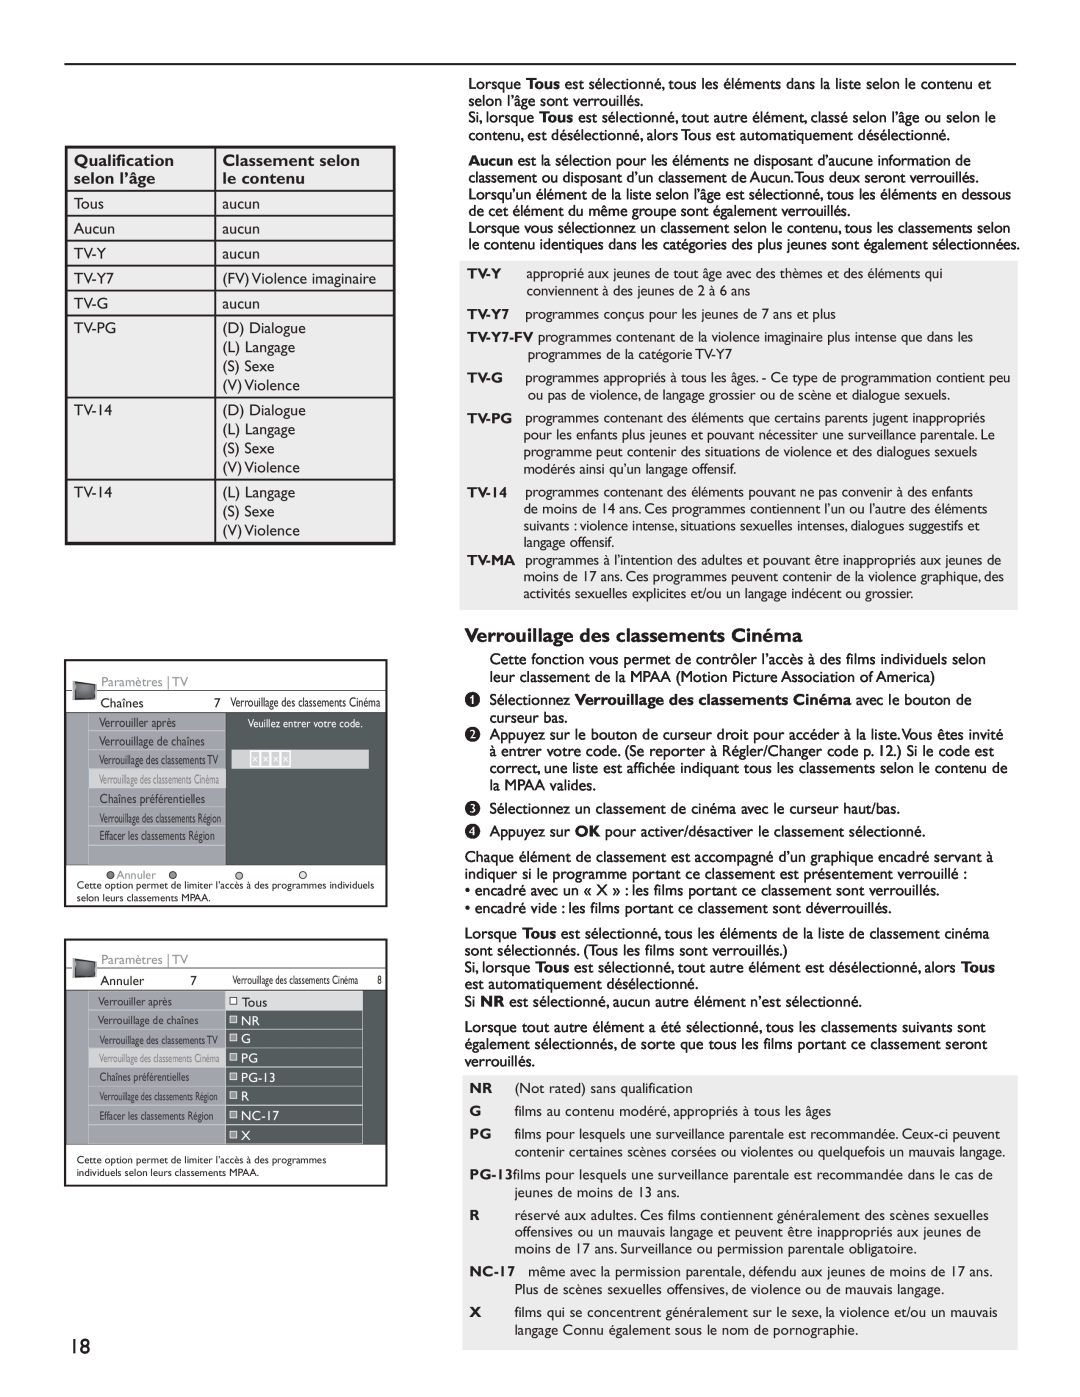 Philips 60PL9220D user manual Verrouillage des classements Cinéma, Qualification, Classement selon, selon l’âge, le contenu 